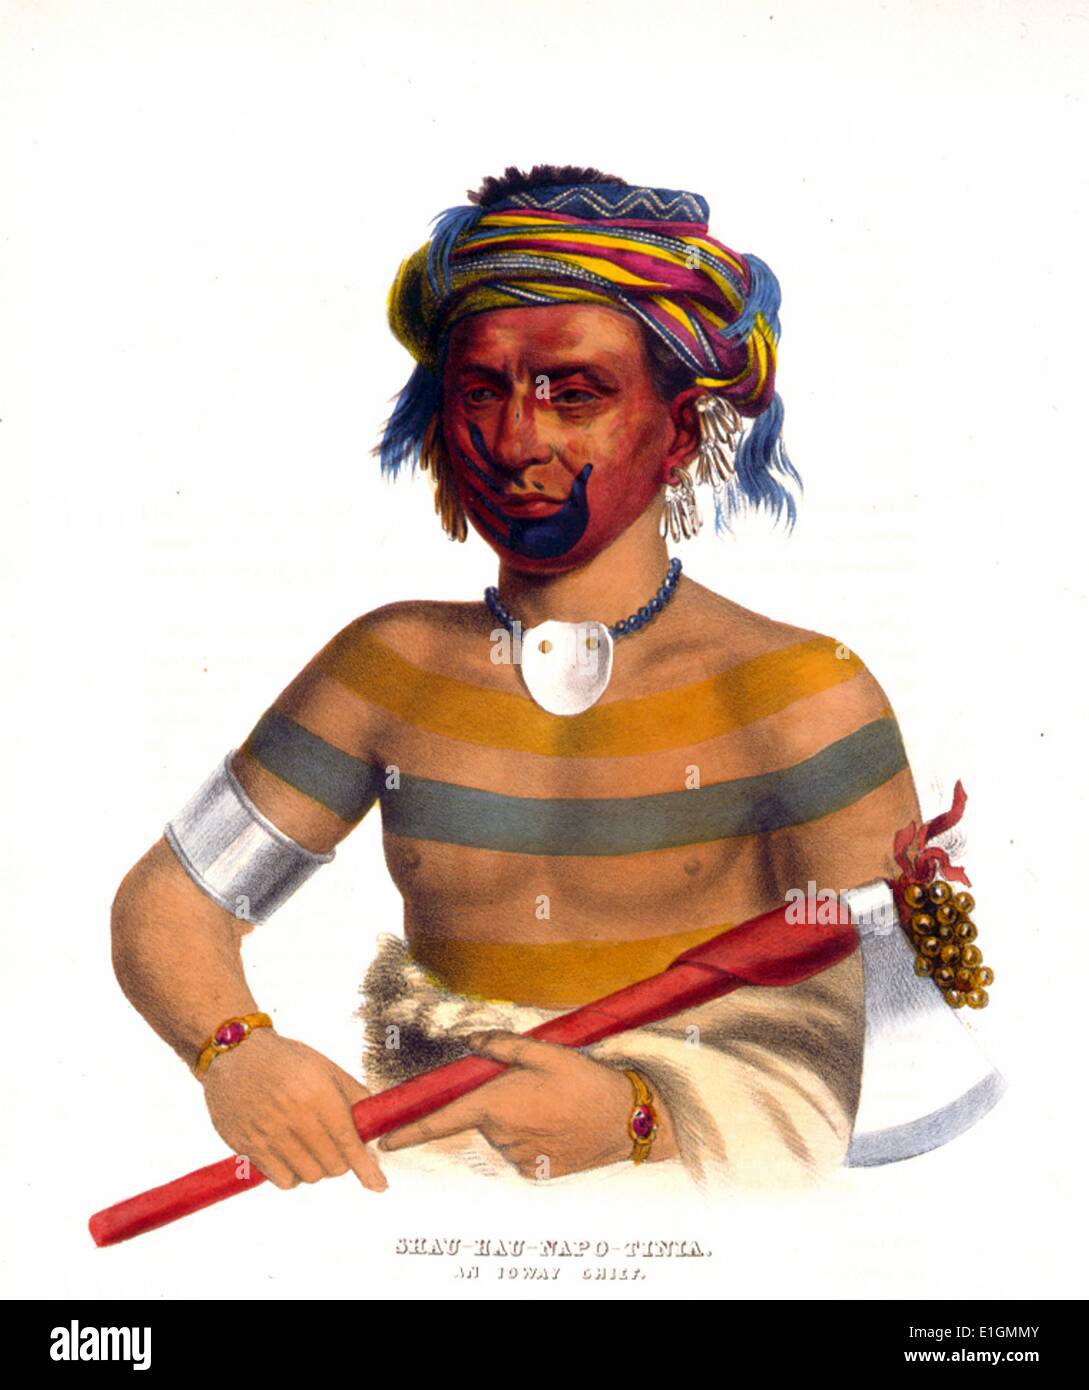 Shau-Hau-Napo-Tinia. An Ioway chief by John Bowen, approximately 1801-1856 Stock Photo